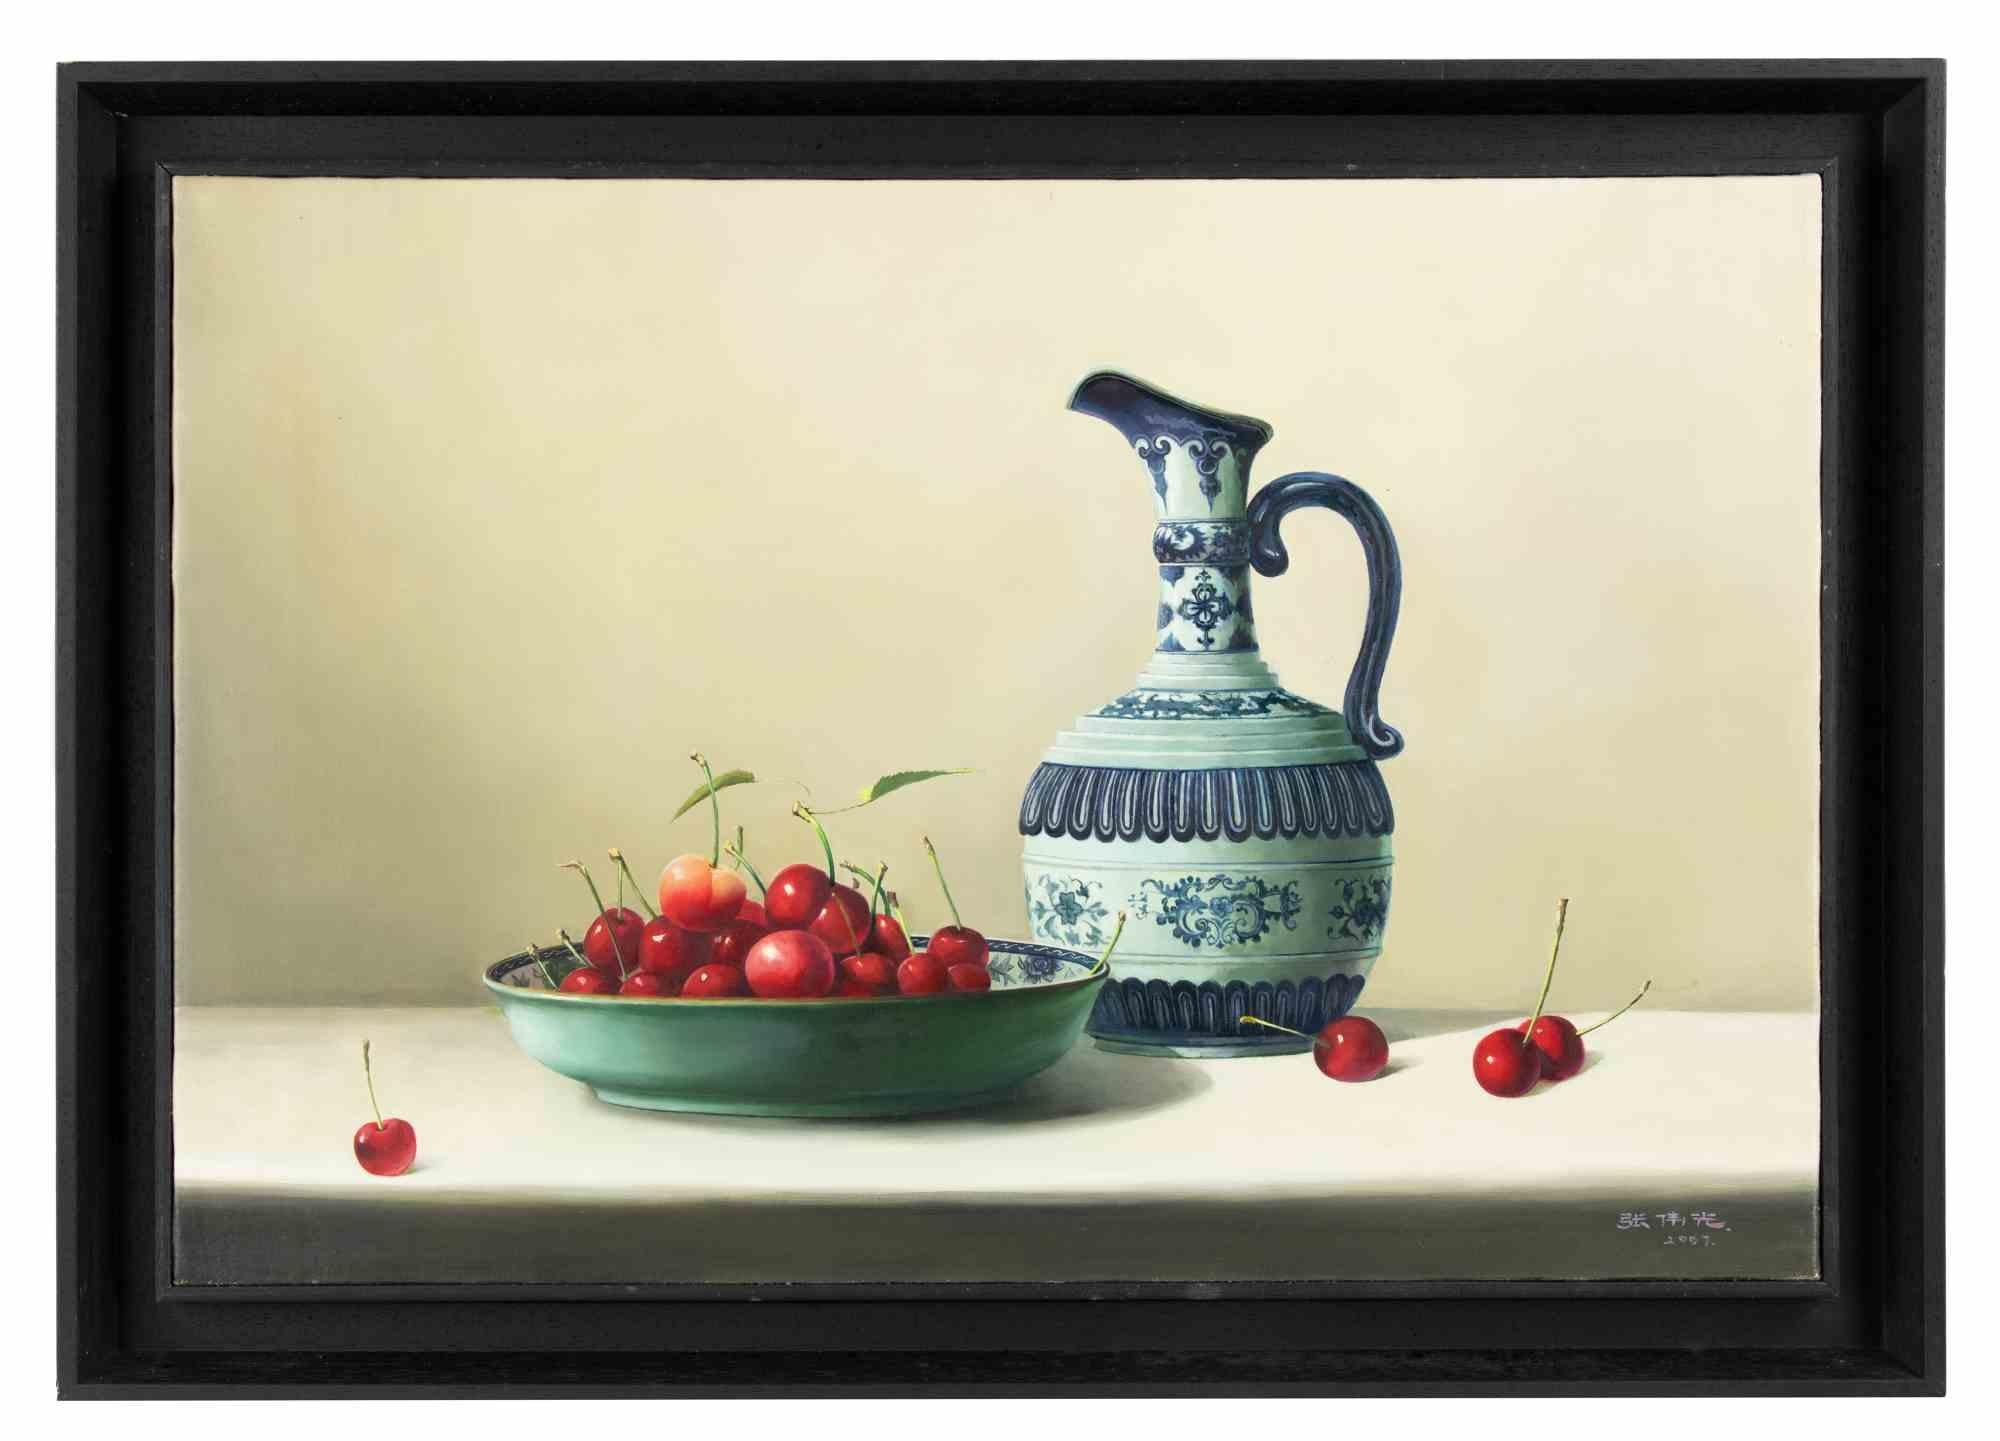 Des cerises sur la table  est une peinture à l'huile réalisée  par Zhang Wei Guang (Miroir) en 2007.

Inclut le cadre.

Signé et daté à la main dans la marge inférieure

Très bonnes conditions.

Zhang Wei Guang, également appelé "miroir", est né à